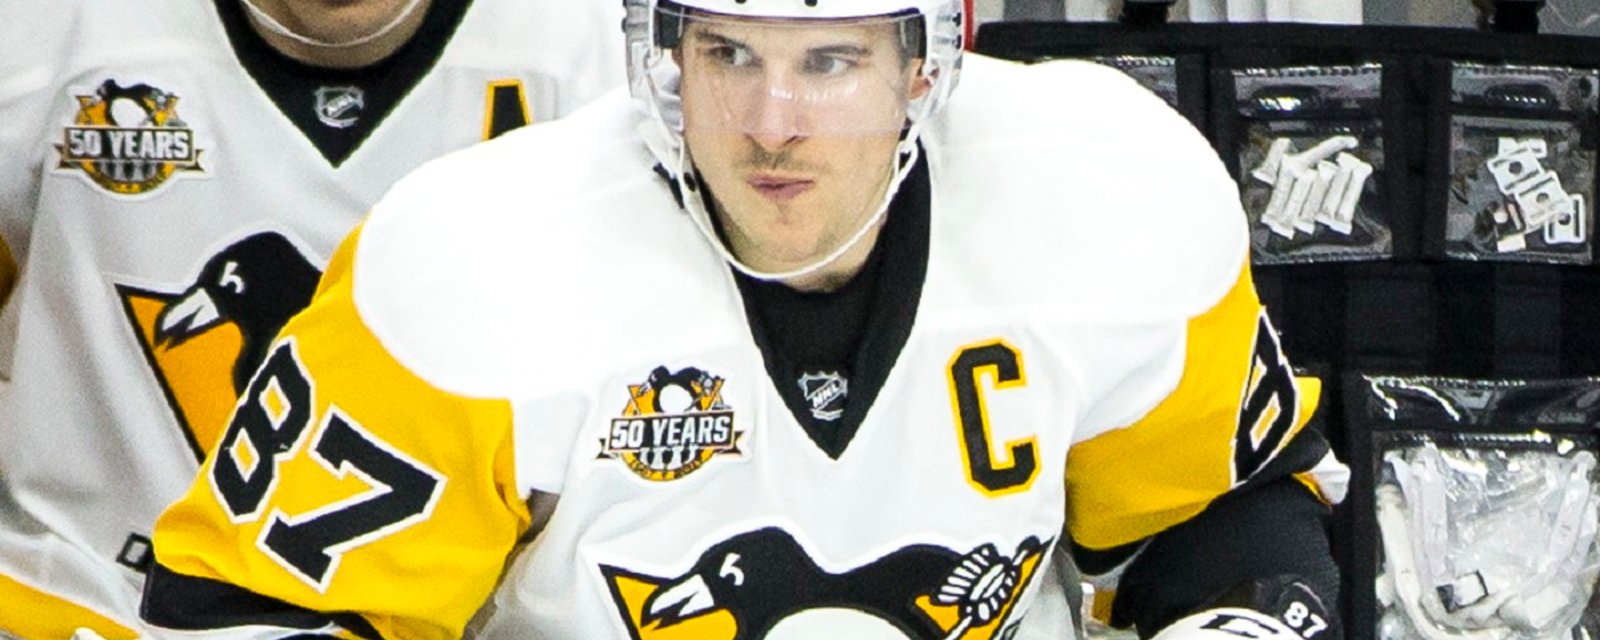 Chicane chez les Penguins impliquant Crosby?